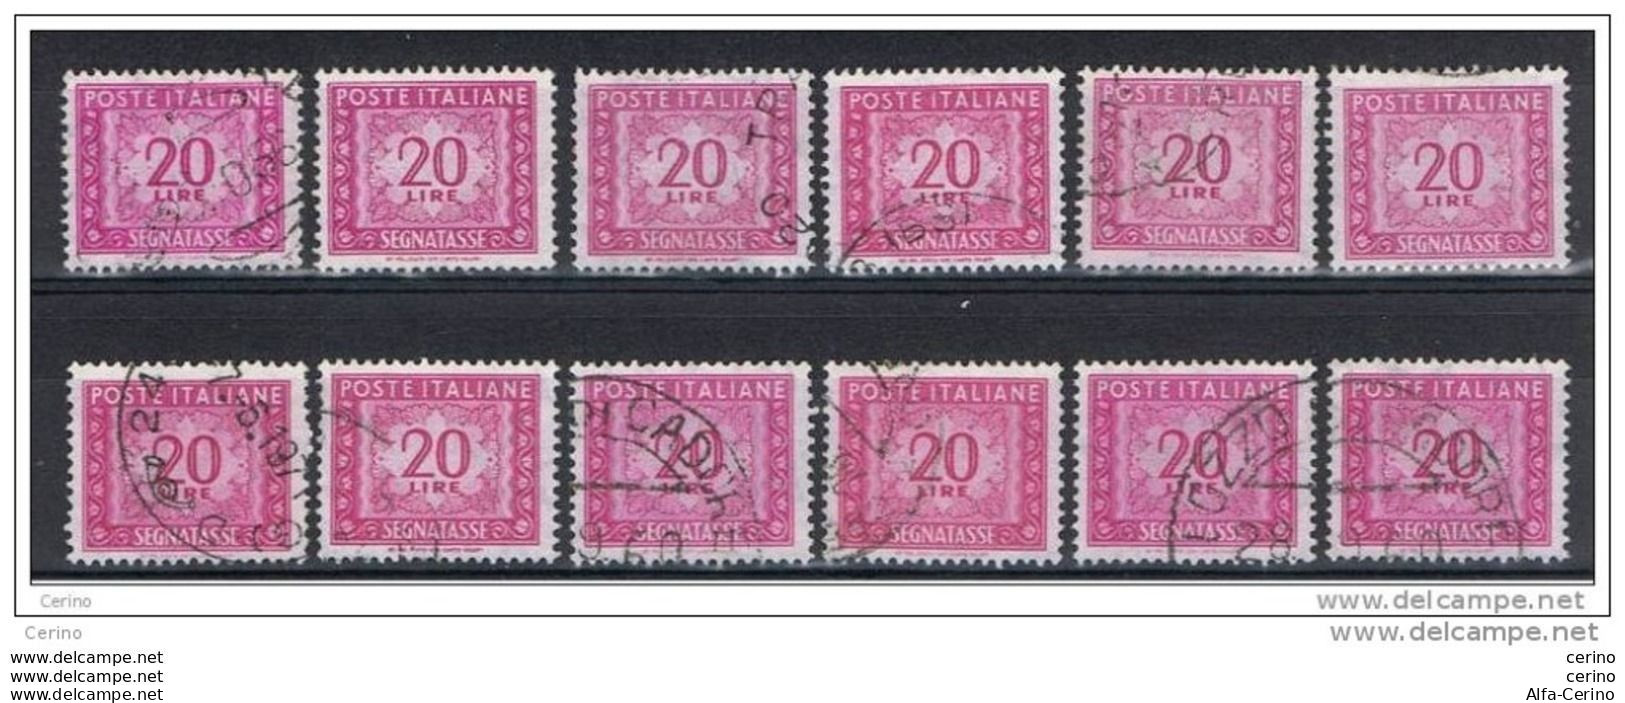 REPUBBLICA:  1955/81  TASSE  ST. -  £. 20  LILLA  ROSA  US. -  RIPETUTO  12  VOLTE  -  SASS. 114 - Segnatasse